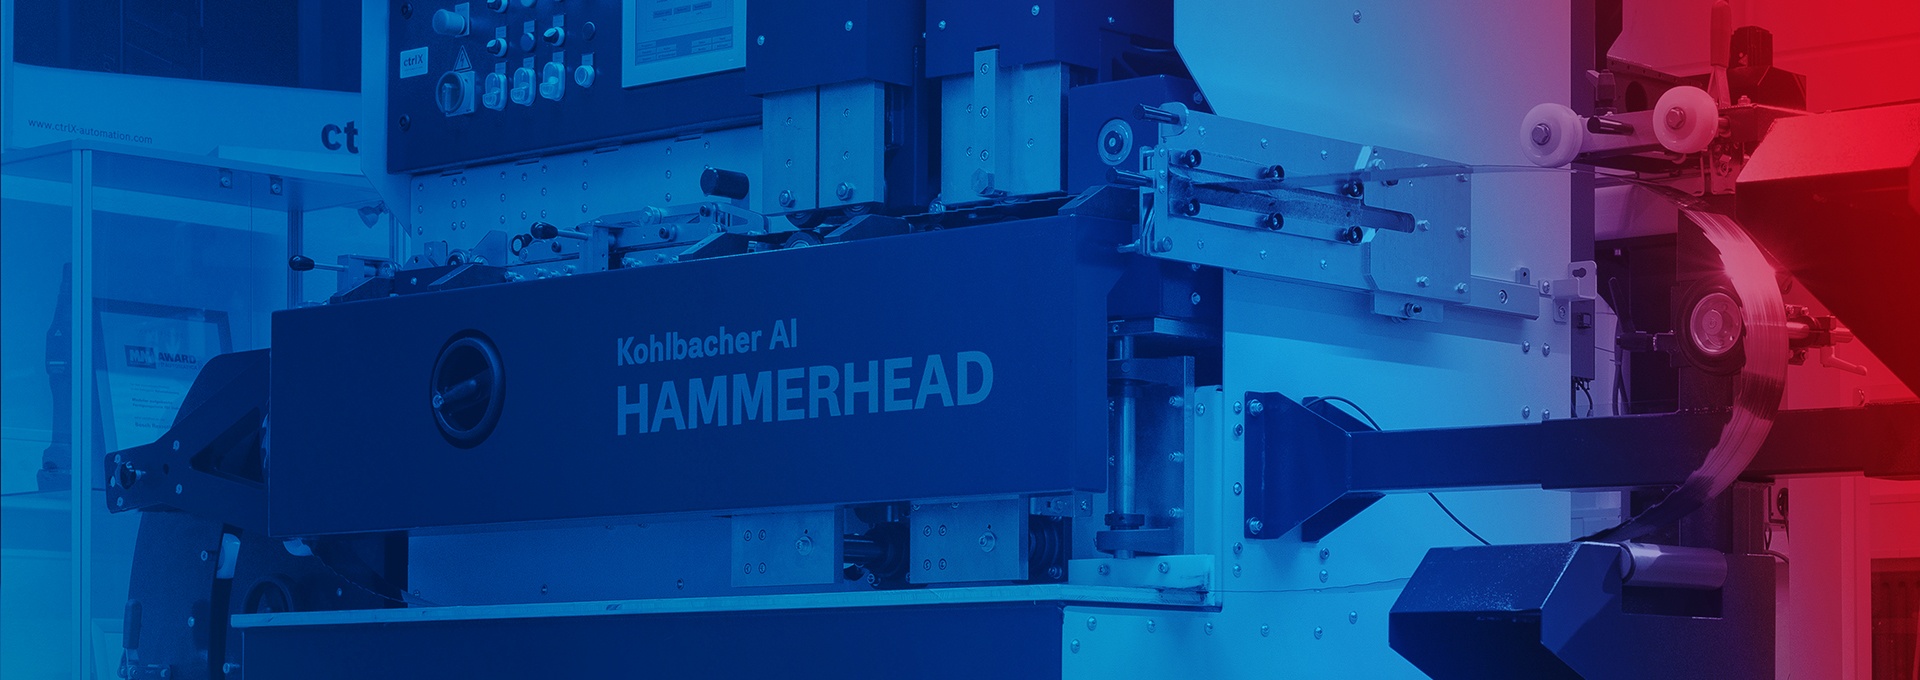 Kohlbacher, AI - Maszyna do ostrzenia pił młotkowych wyposażona w ctrlX AUTOMATION Komponent